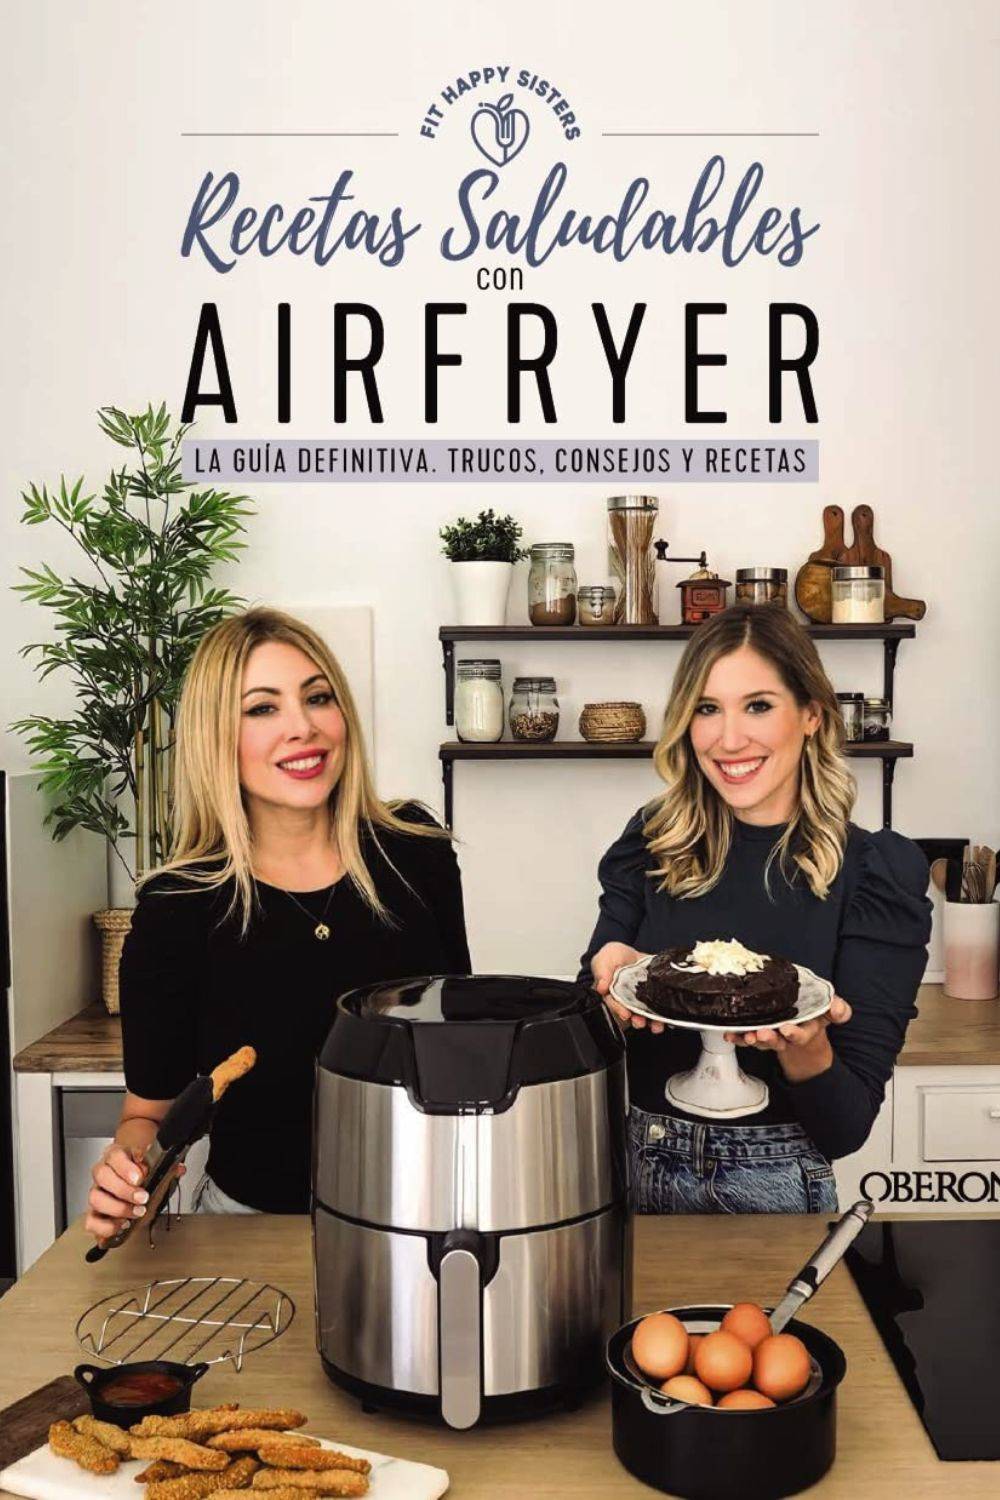 Libros prácticos: 'Recetas saludables con Airfryer' de Fit Happy Sisters